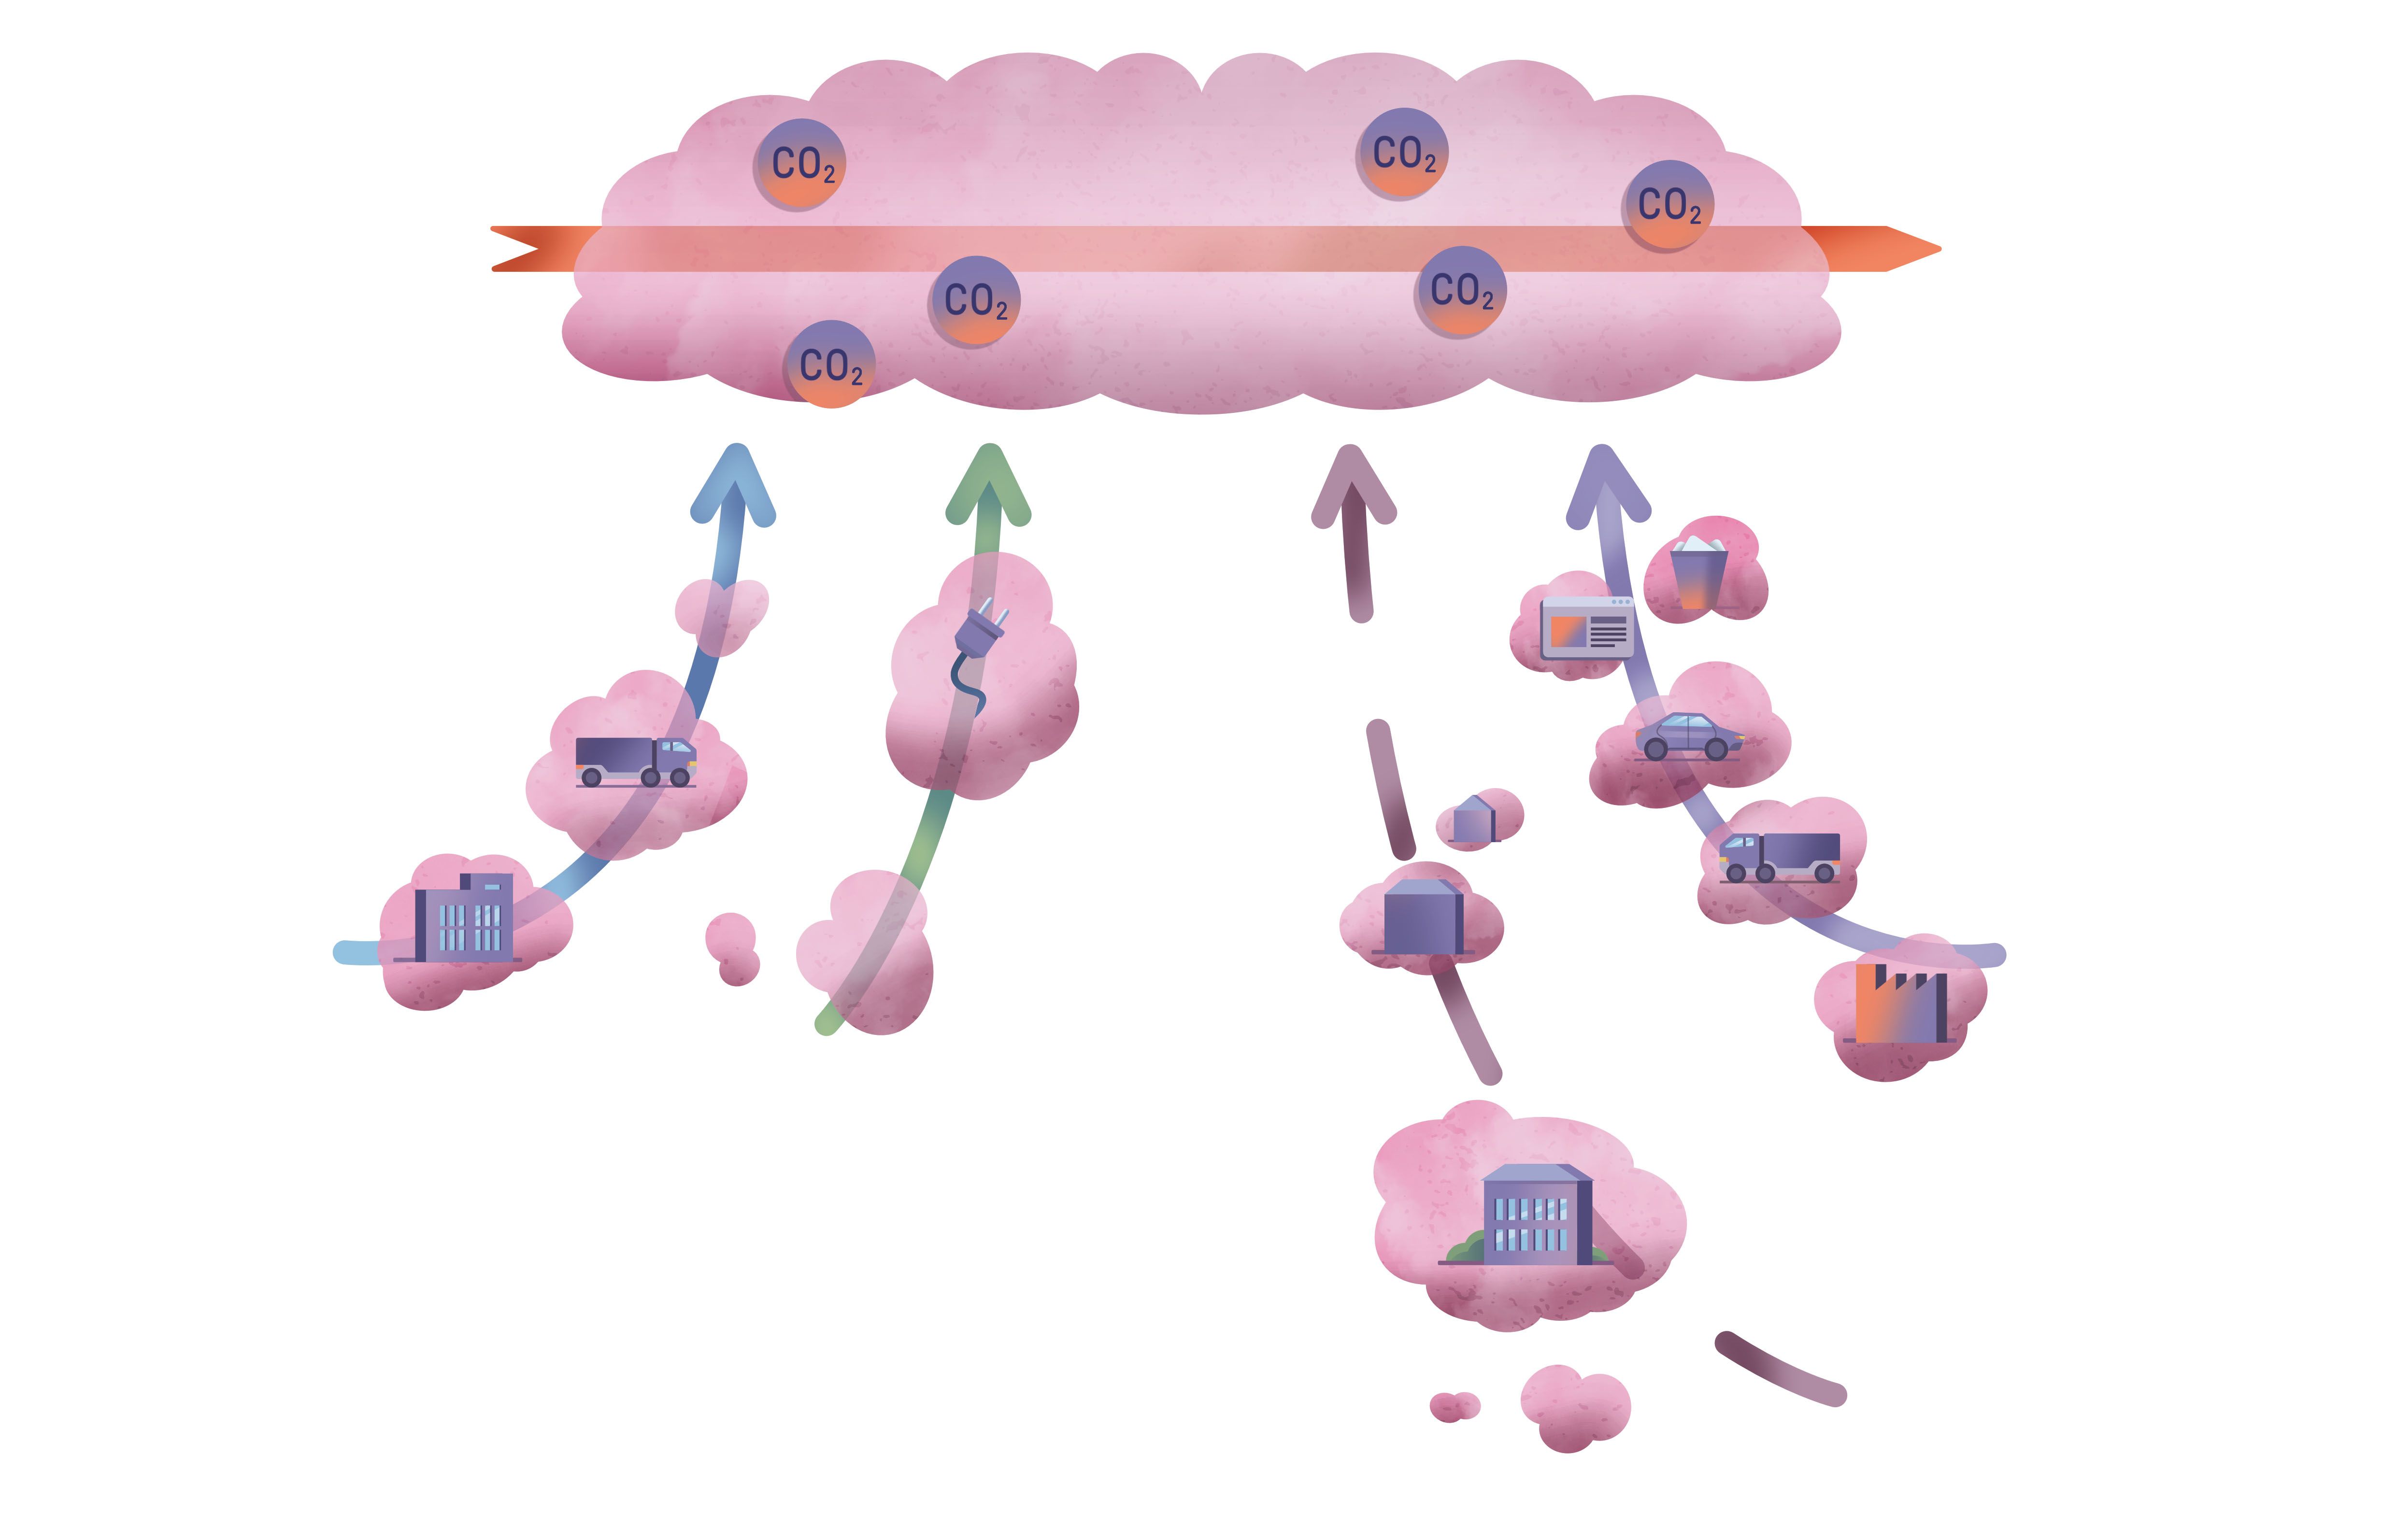 Das Scope-Modell wird veranschaulicht: Vier Pfeile mit Wolken am Rand bilden gemeinsam eine große Wolke, die voller CO2 ist, oben im Bild.